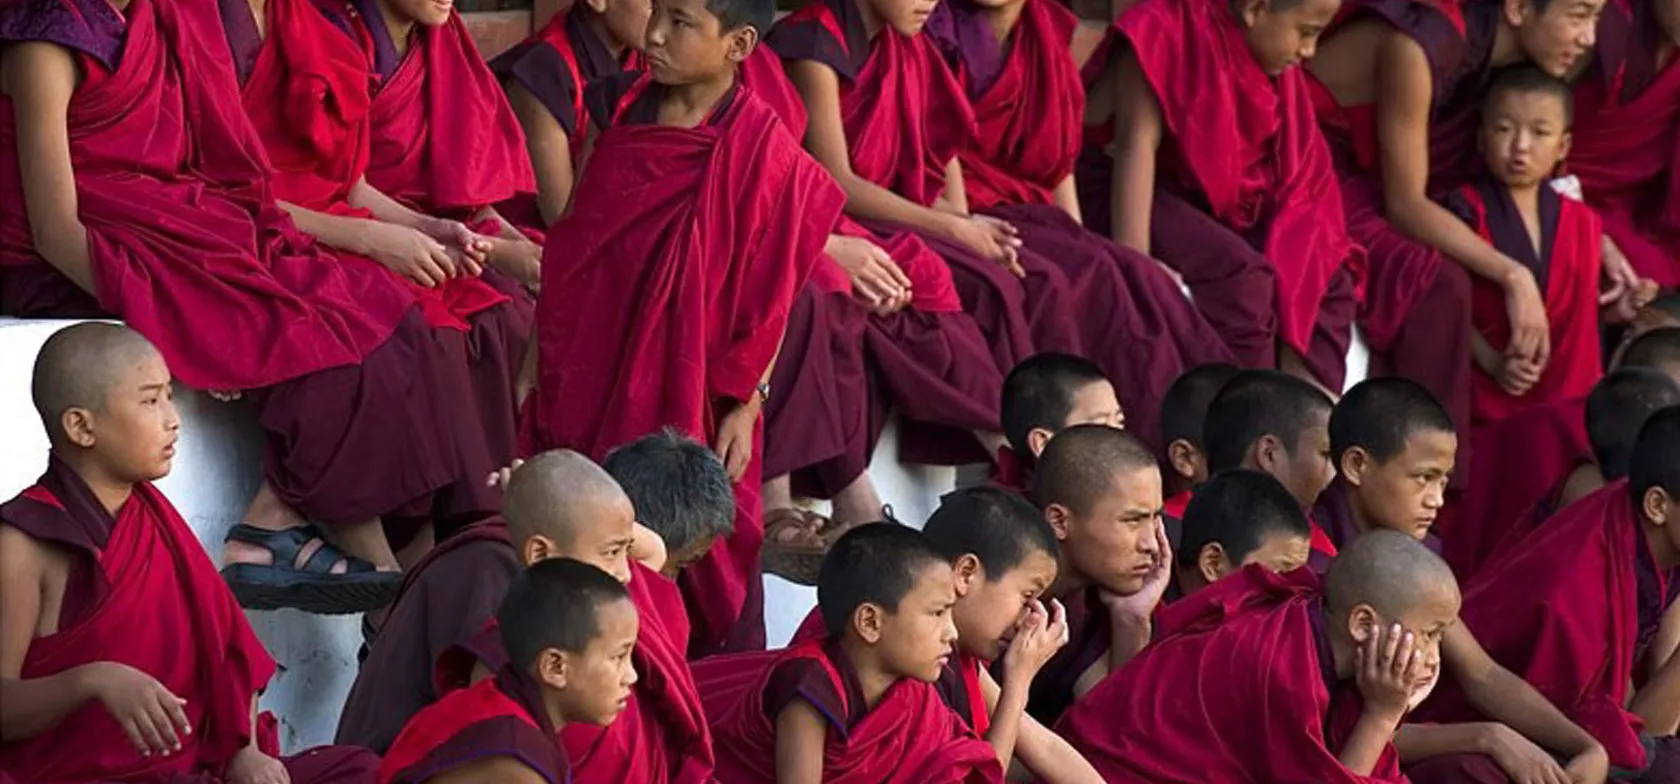 Klosterkulturen lever i bedste velgående i Bhutan. Foto Viktors Farmor